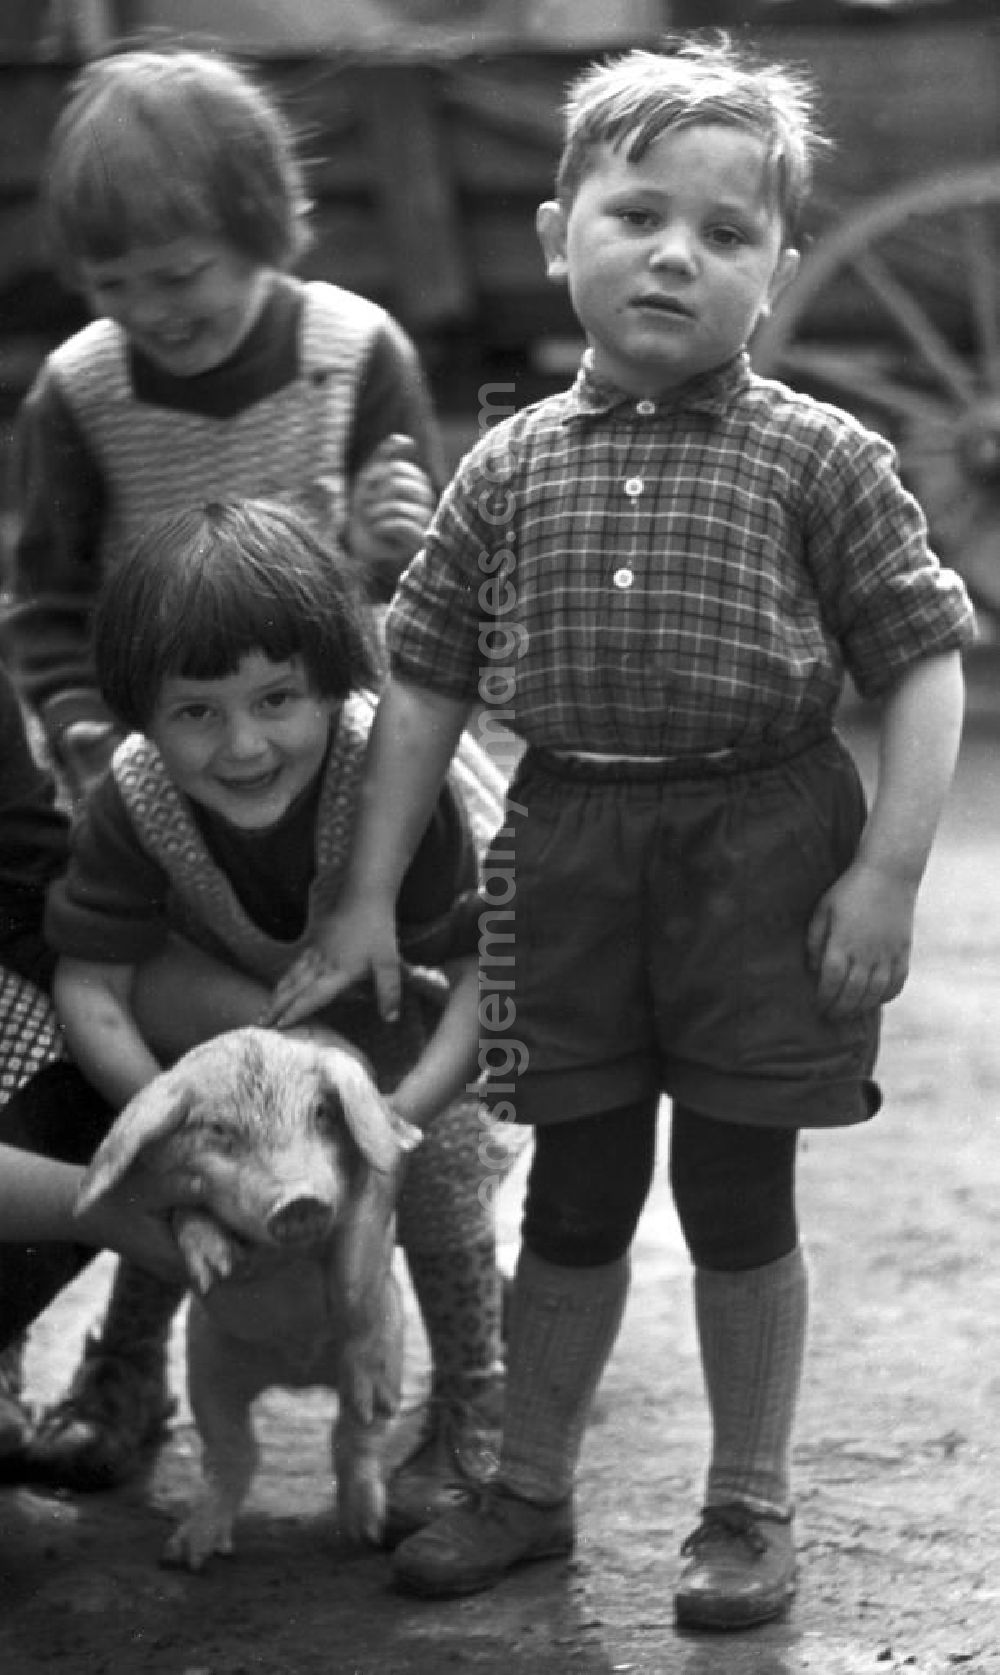 GDR photo archive: Pomßen - Kinder aus dem kleinen Dorf Pomßen nahe Leipzig posieren zusammen mit einem kleinen Ferkel für ein Gruppenfoto.